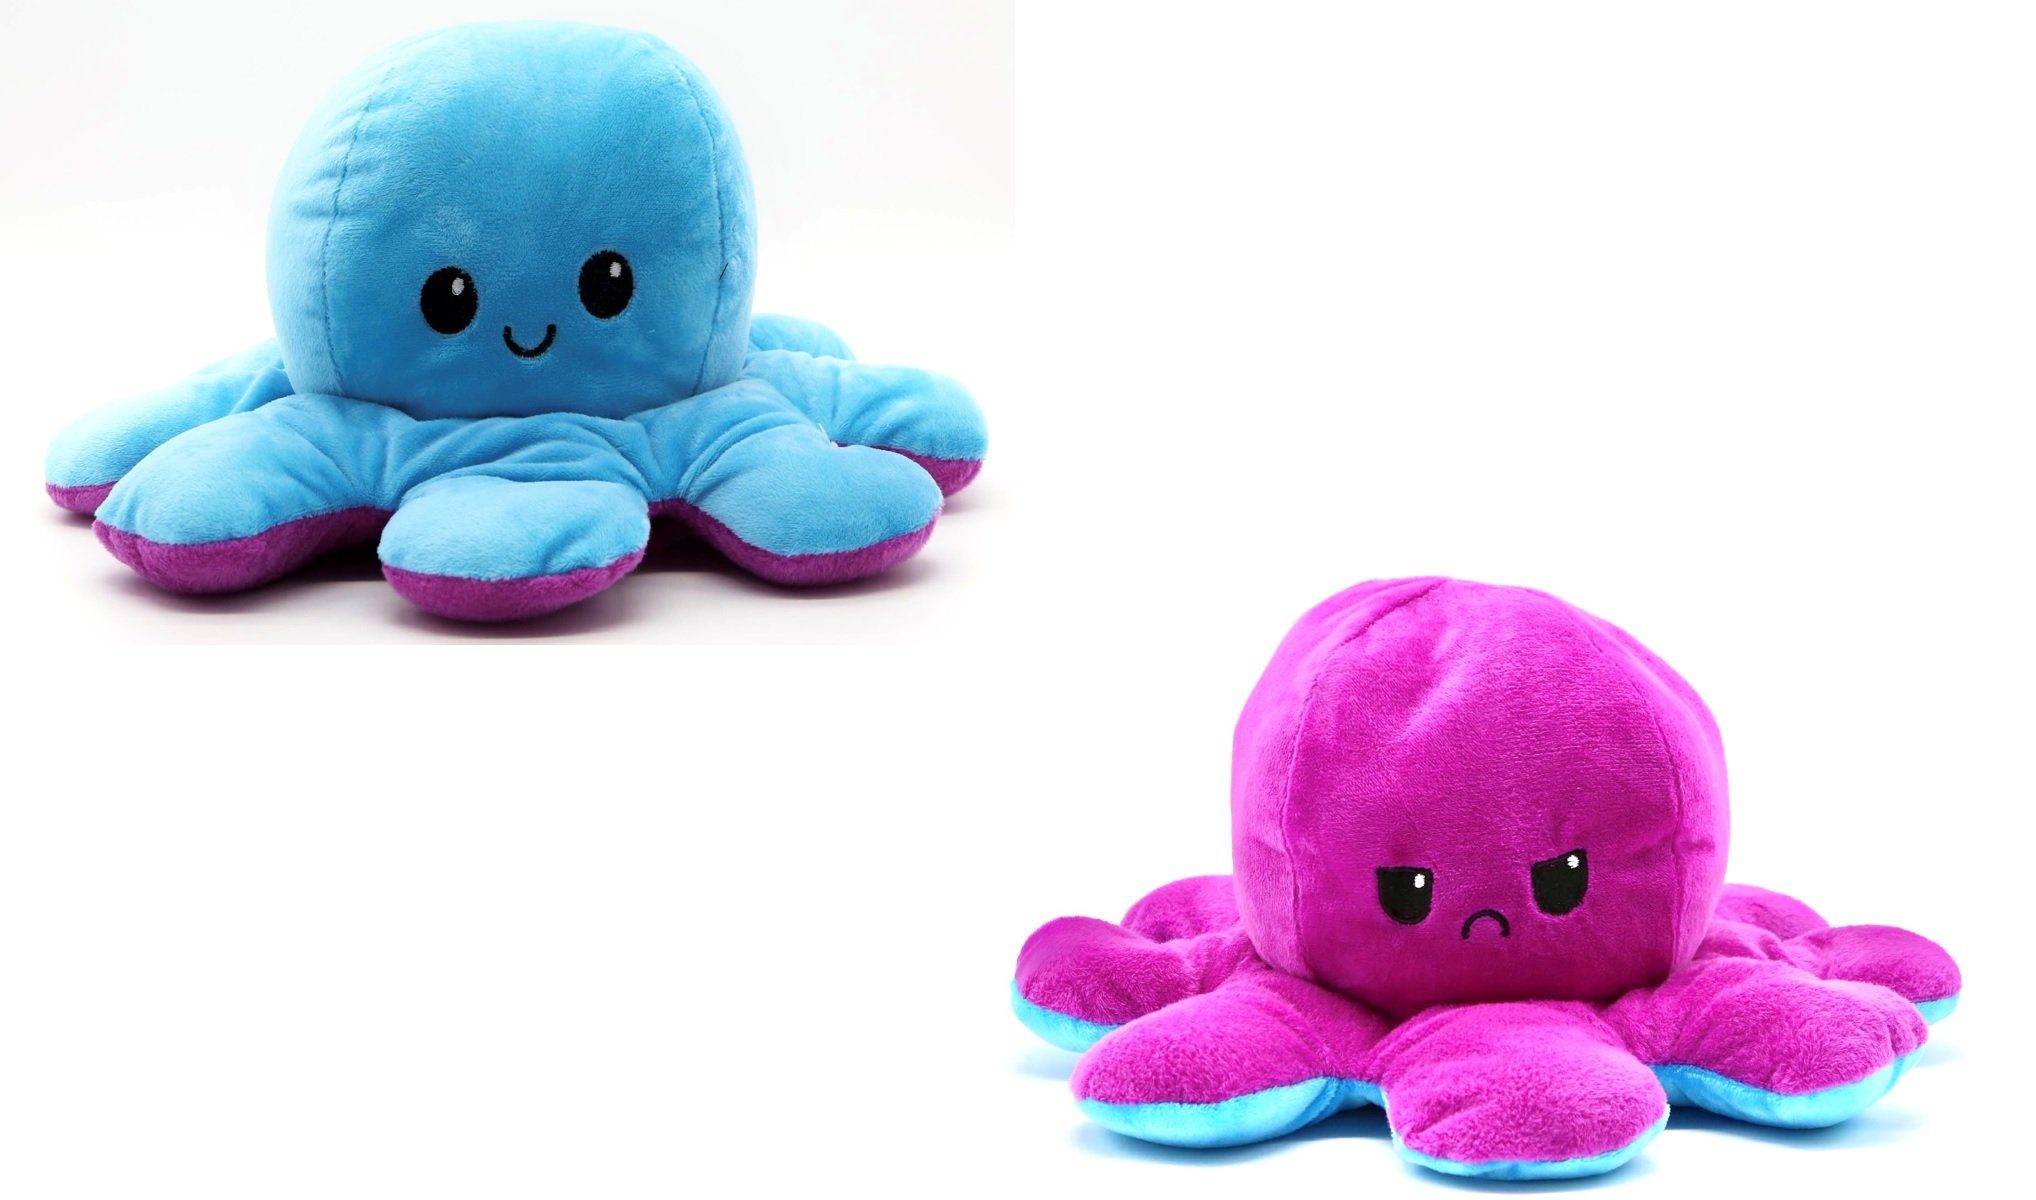 Wende-Oktopus Stimmung Octopus Doll Plüschtier Puppe Doppelseitiges Kuscheltier 